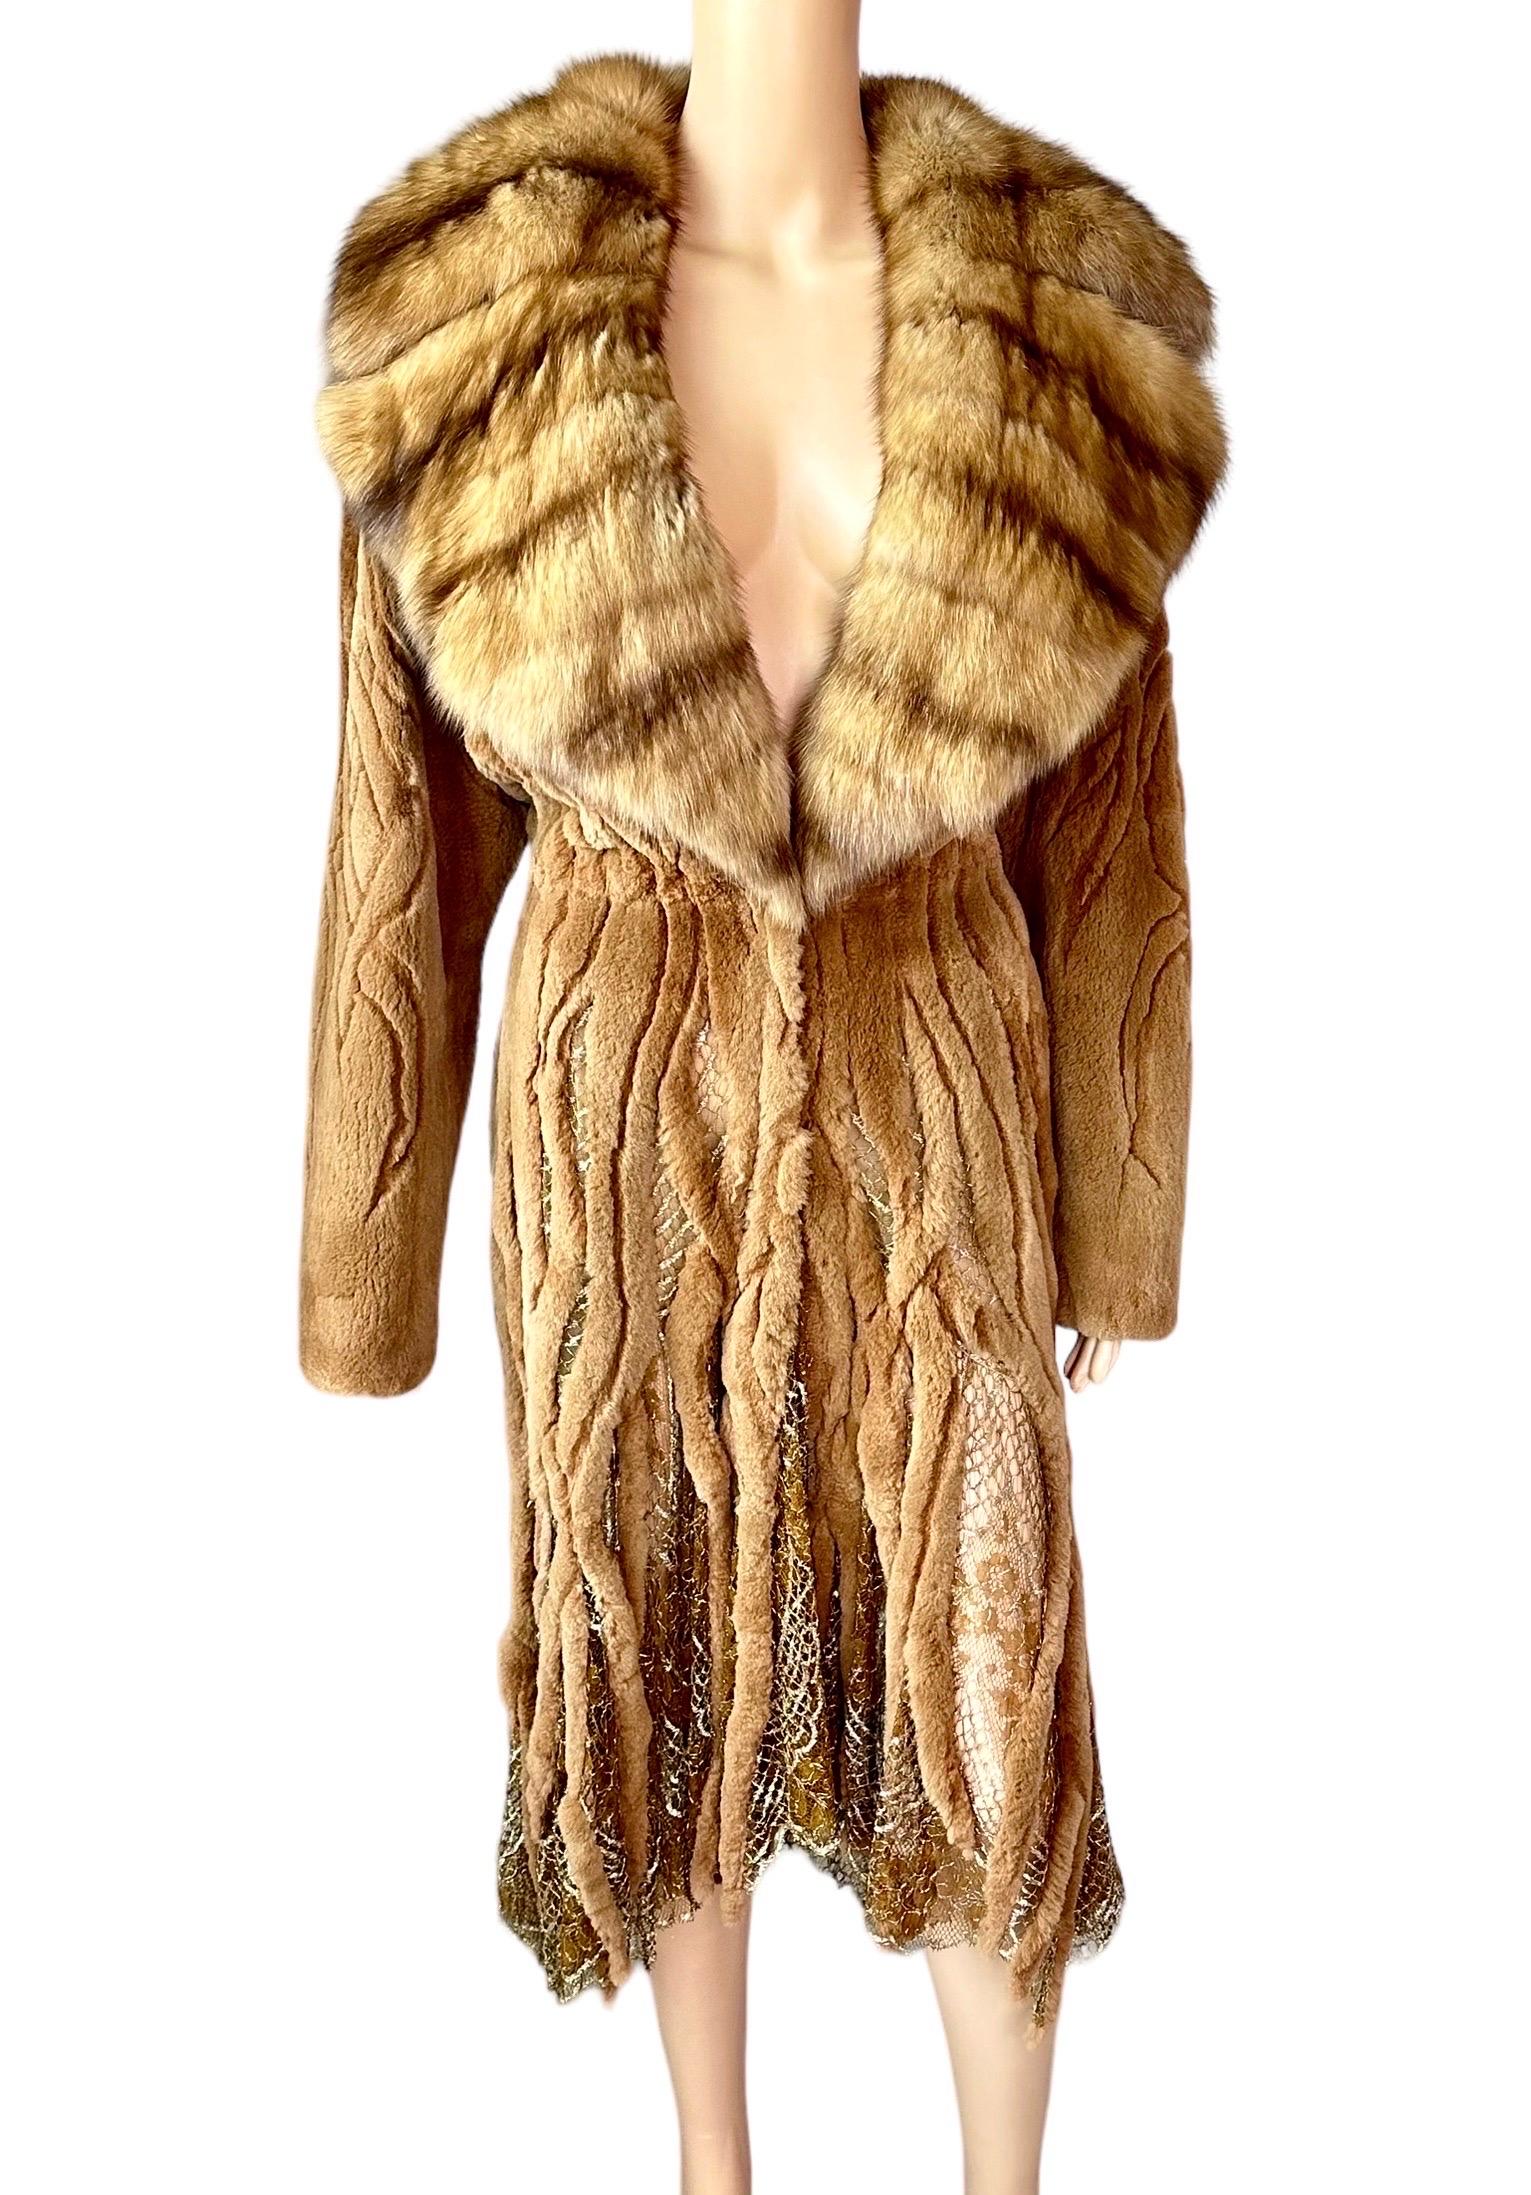 Atelier Gianni Versace c.1996 Fur Cutout Sheer Lace Mesh Panels Jacket Coat For Sale 12